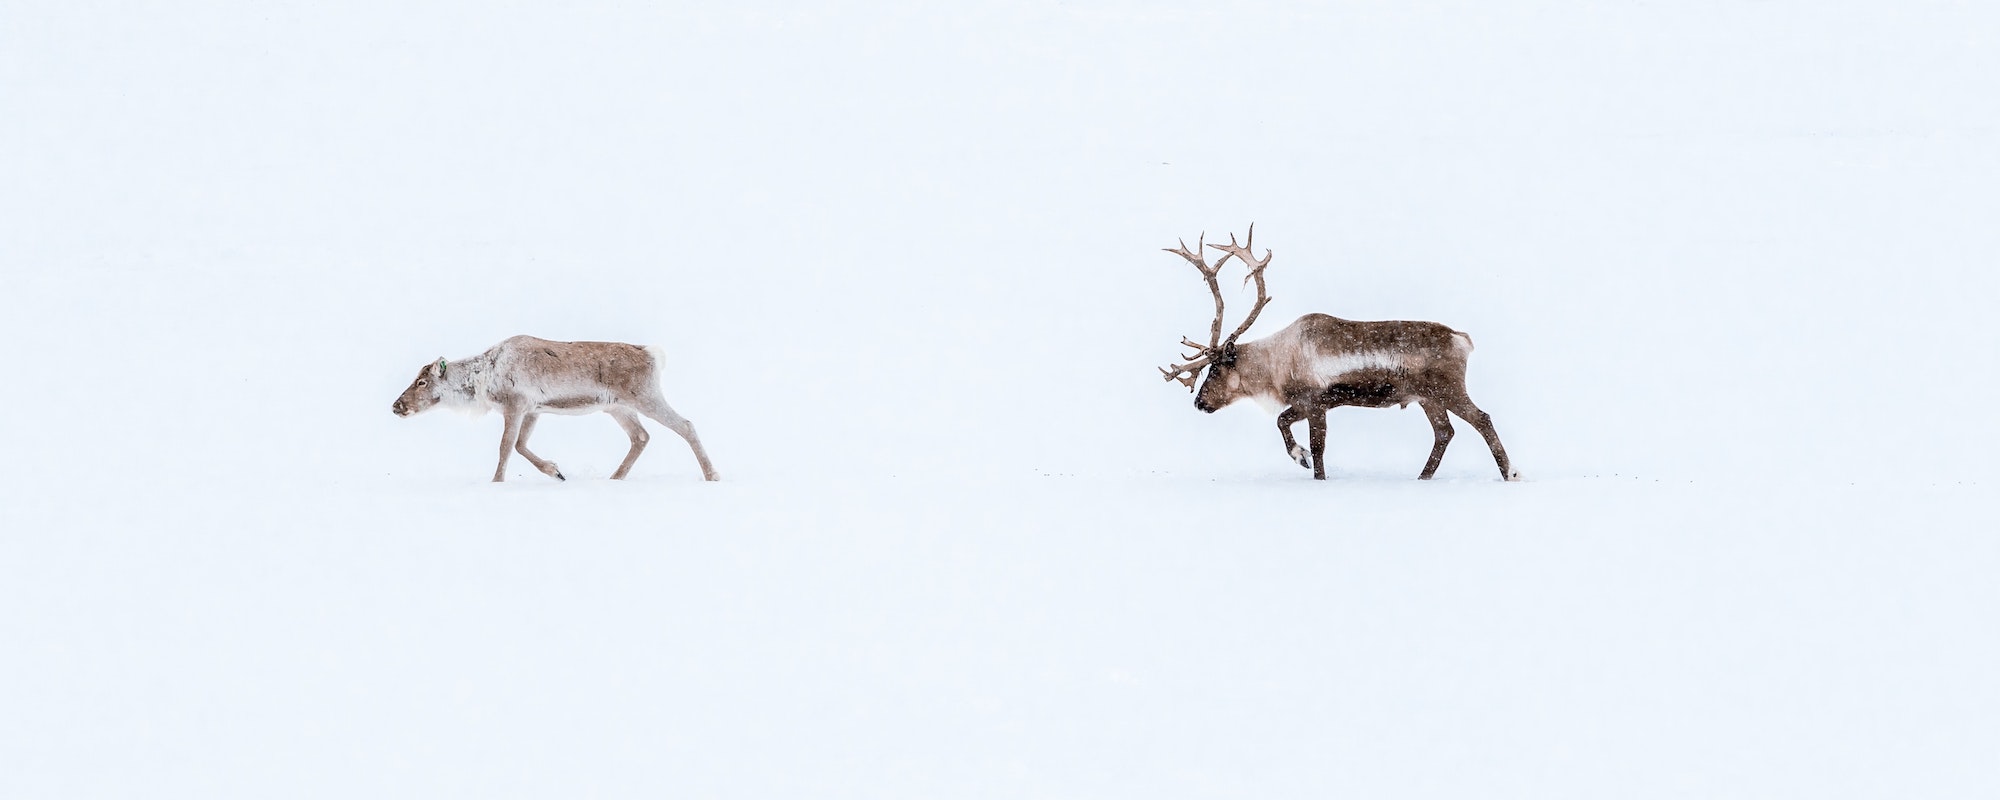 Reindeers in snow